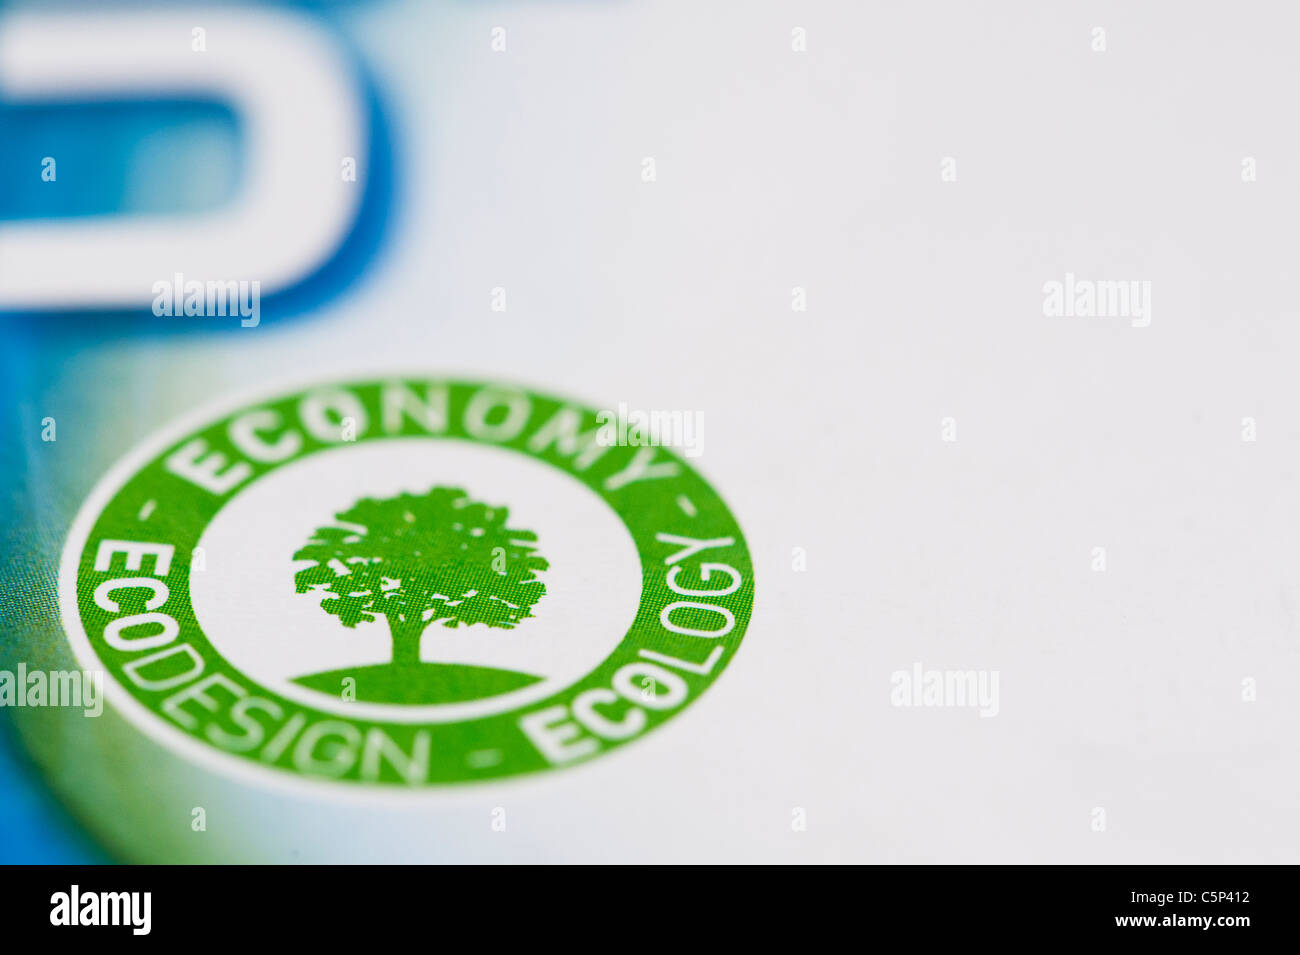 Economy Ecology Ecodesign product label Stock Photo